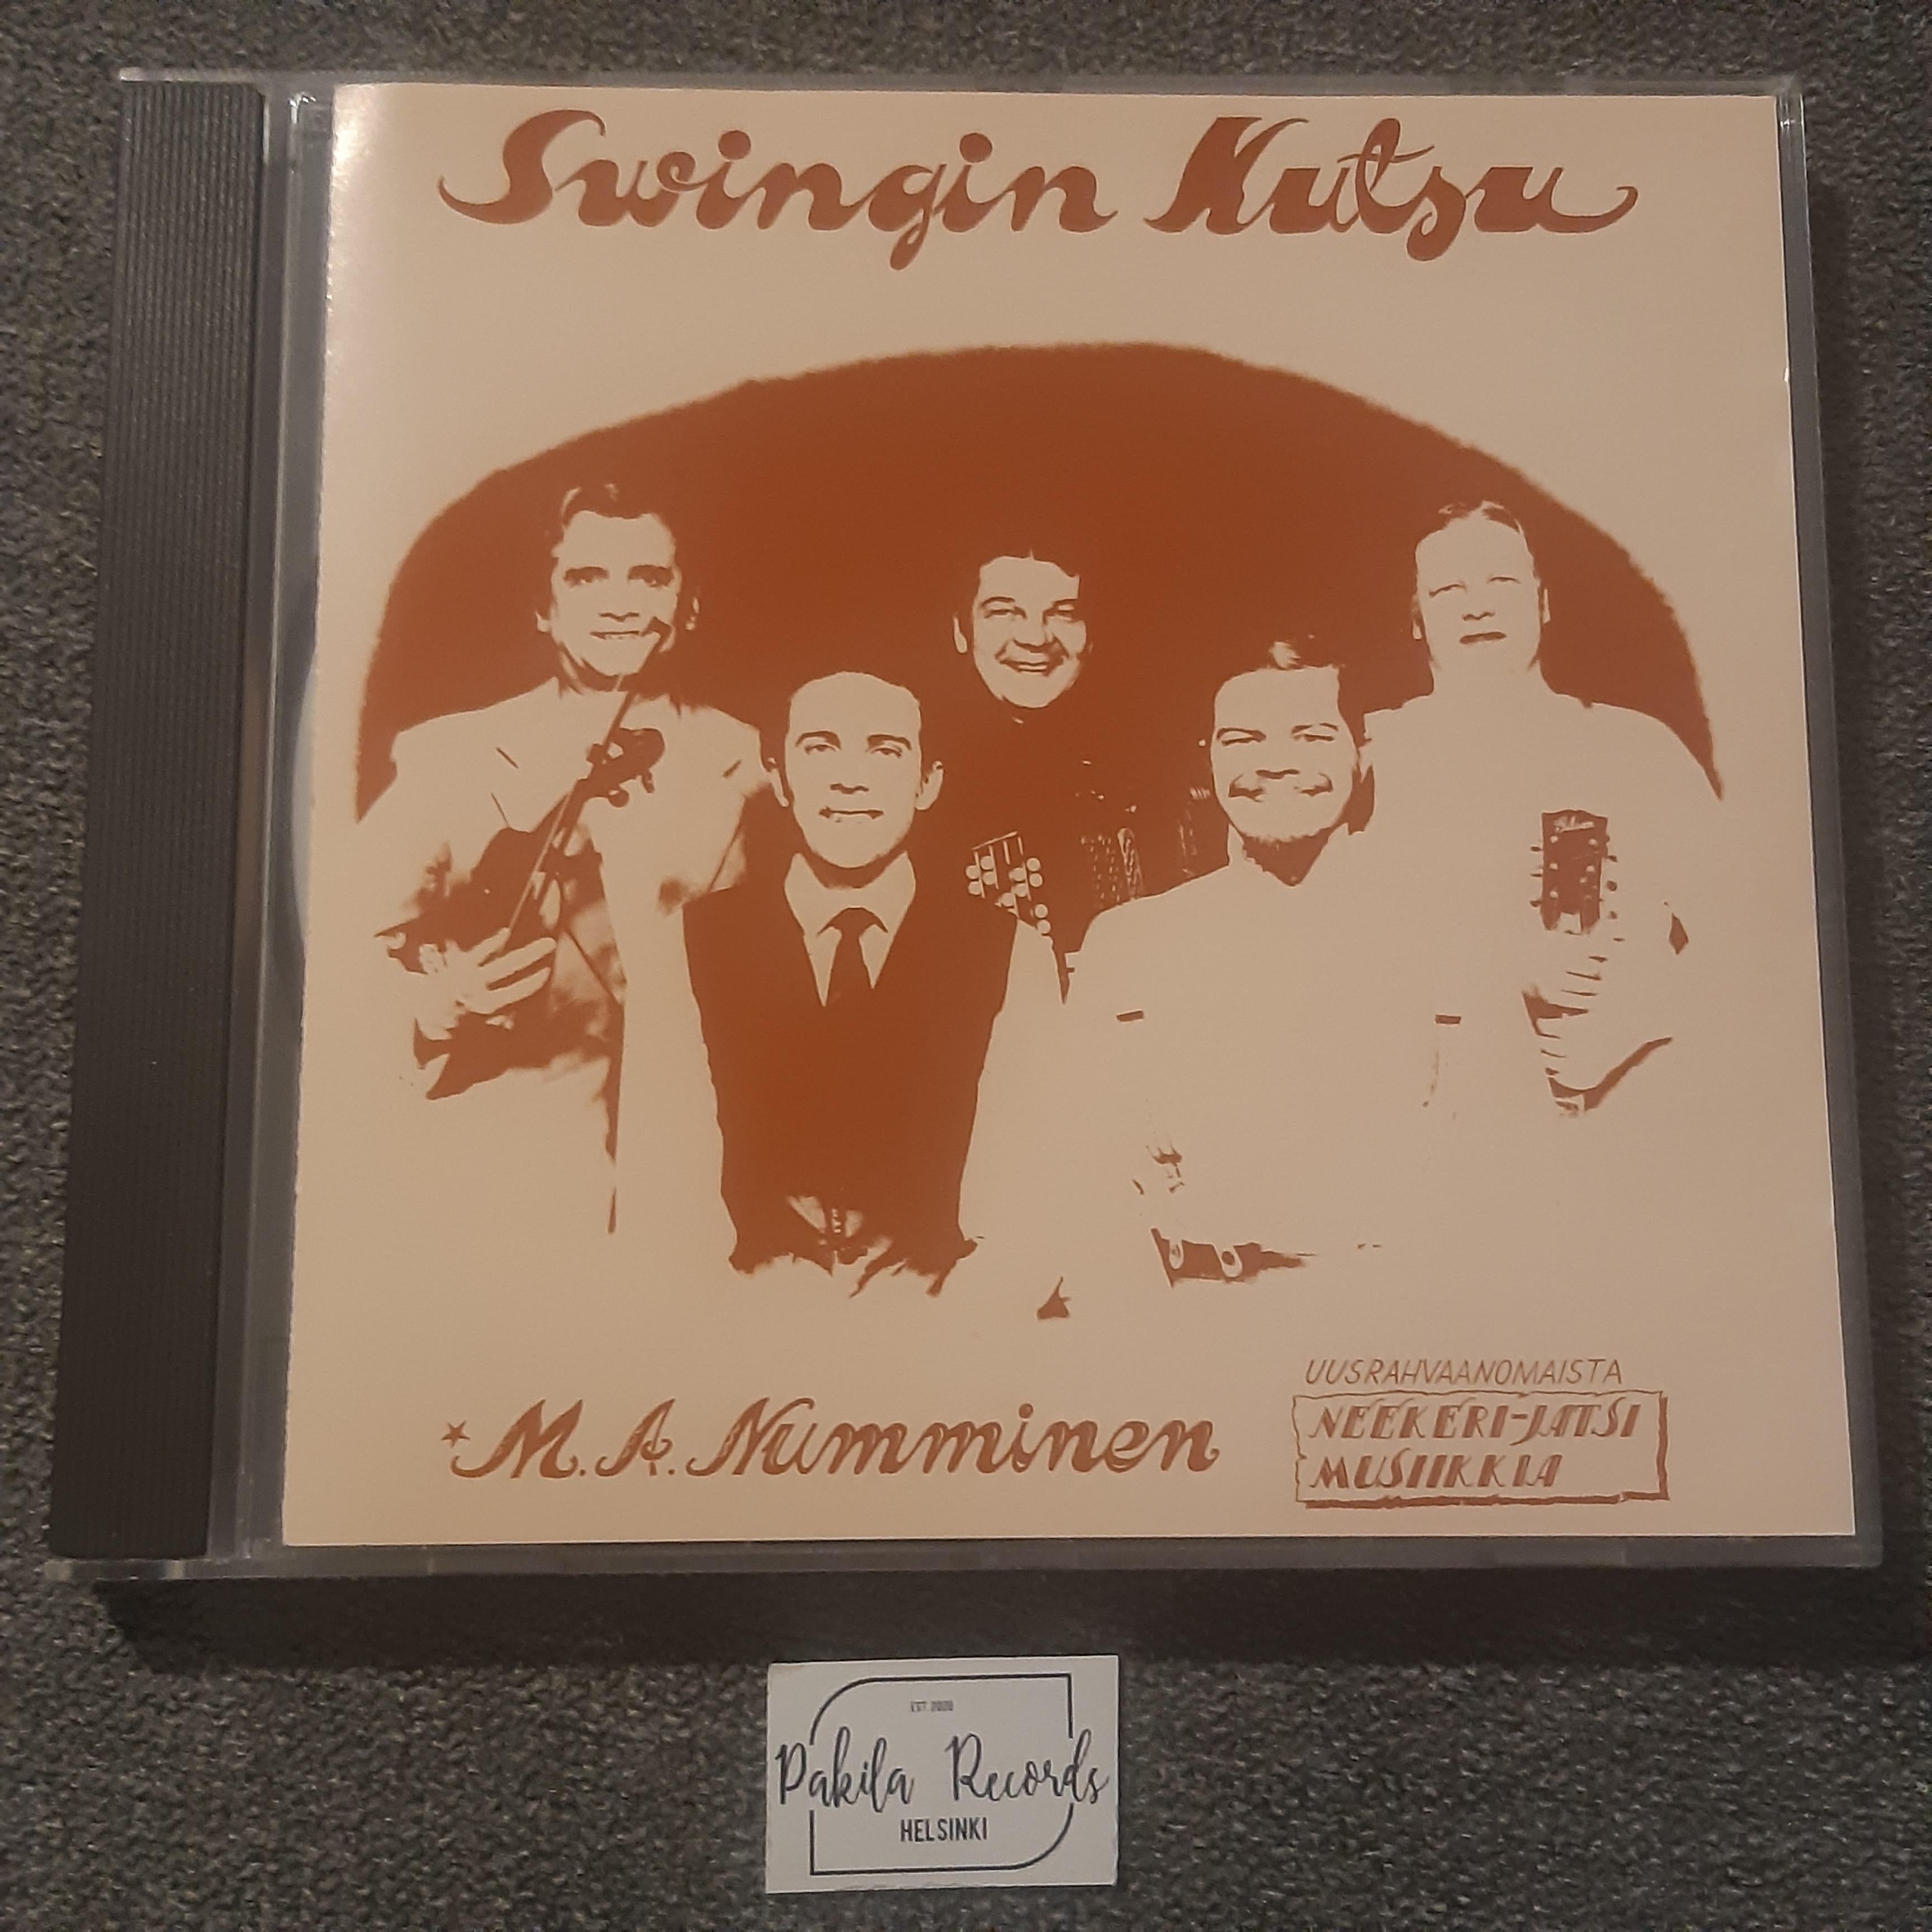 M.A. Numminen  - Swingin kutsu - CD (käytetty)